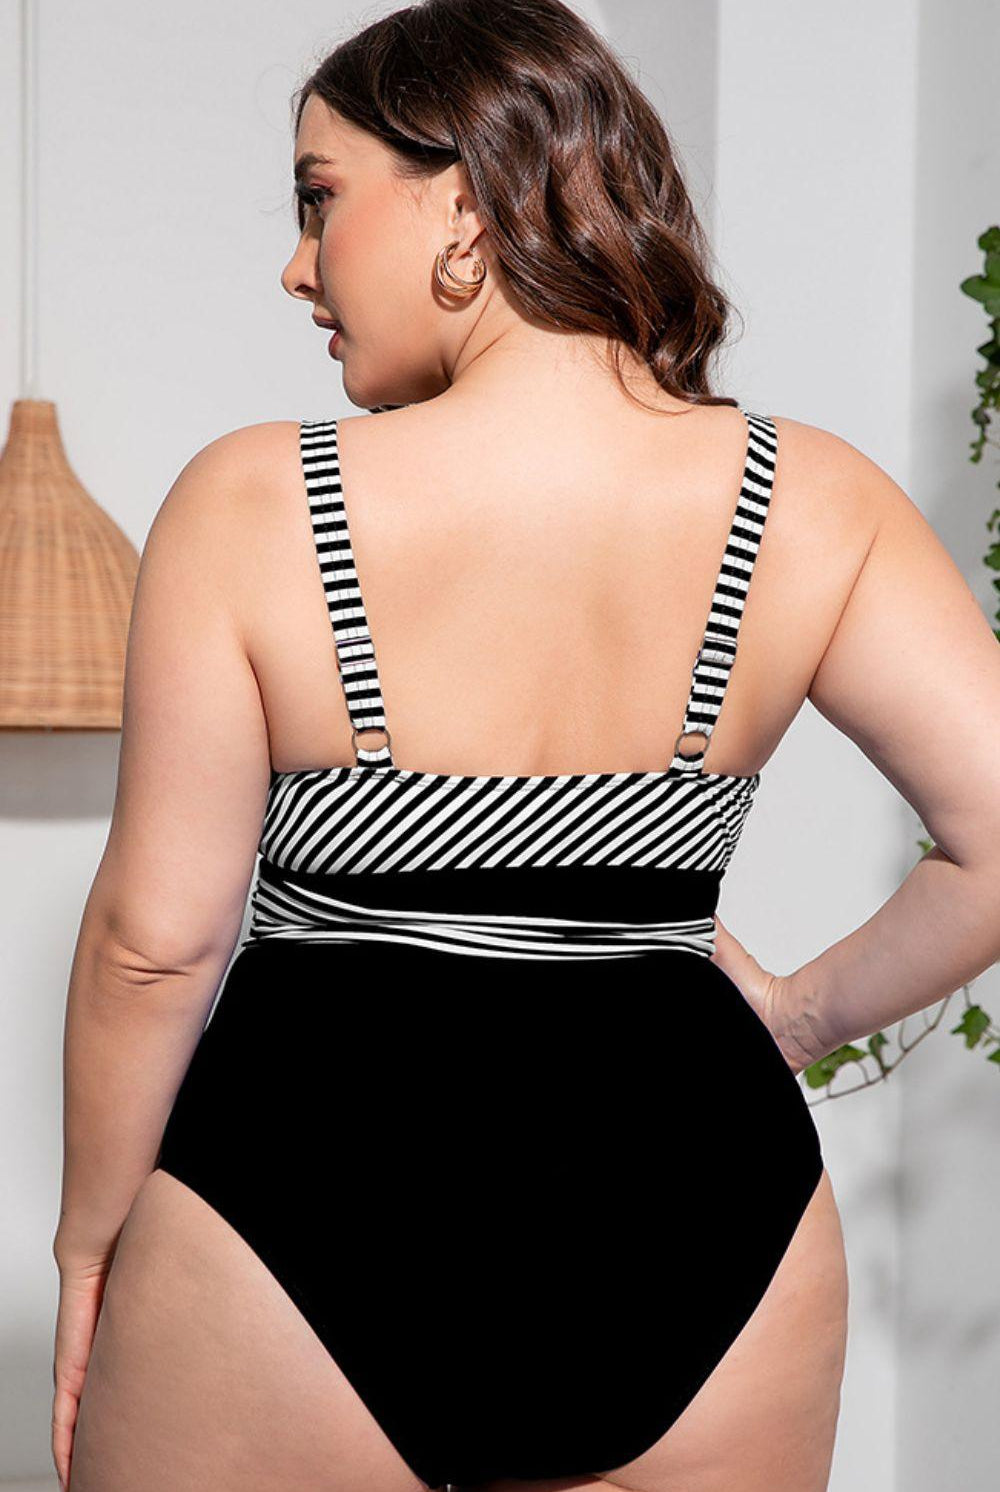 Women's Swimwear - Plus Sizes Plus Size Striped Tie-Waist One-Piece Swimsuit